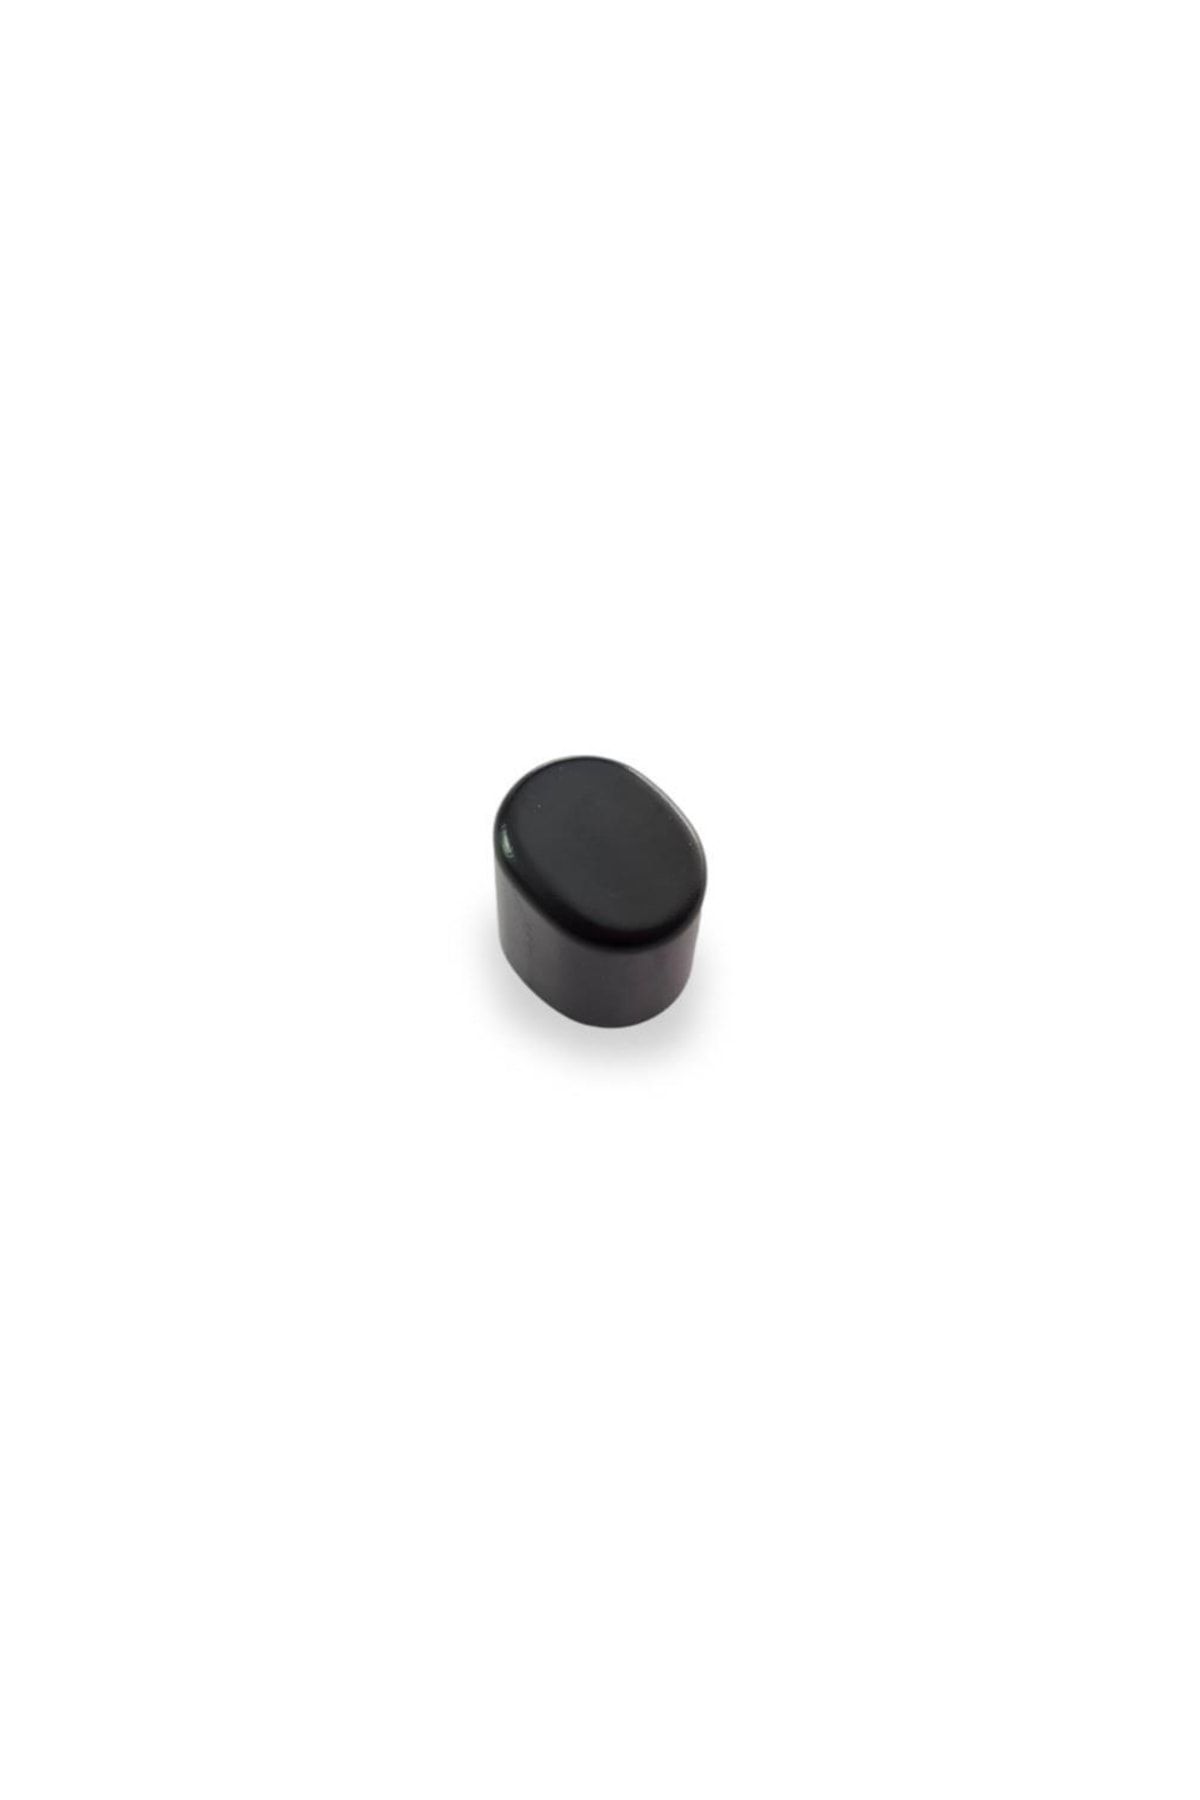 gkl Seat Altea Xl 2008-2015 El Fren Kolunun Basma Düğmesi Butonu Tuşu Siyah Tip 1k0711303p